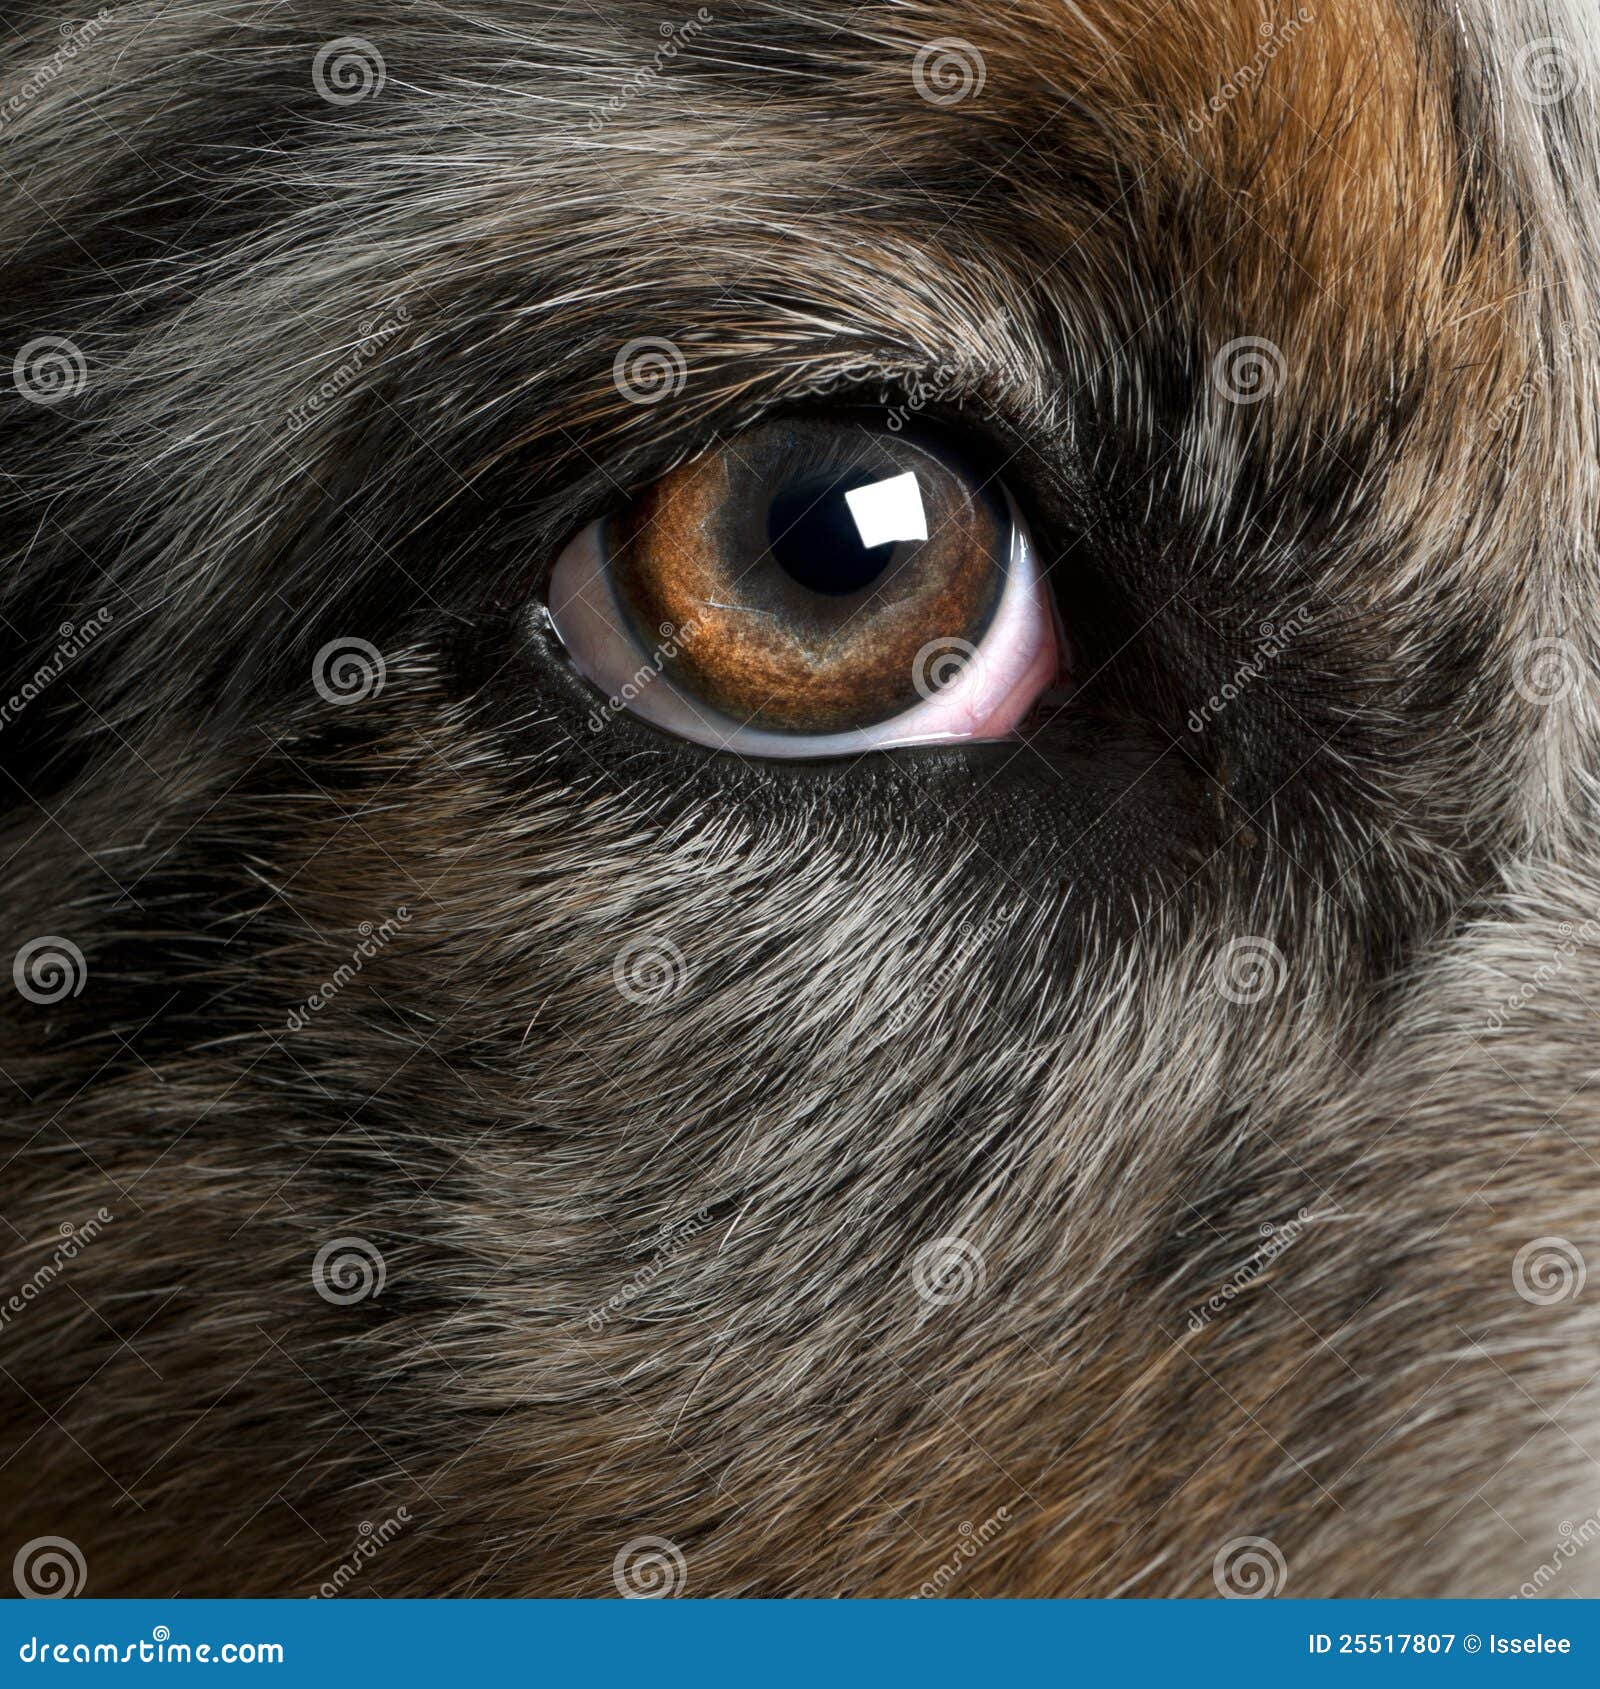 Hund hat rote Augen: Anzeichen für Stress? Wir klären auf!